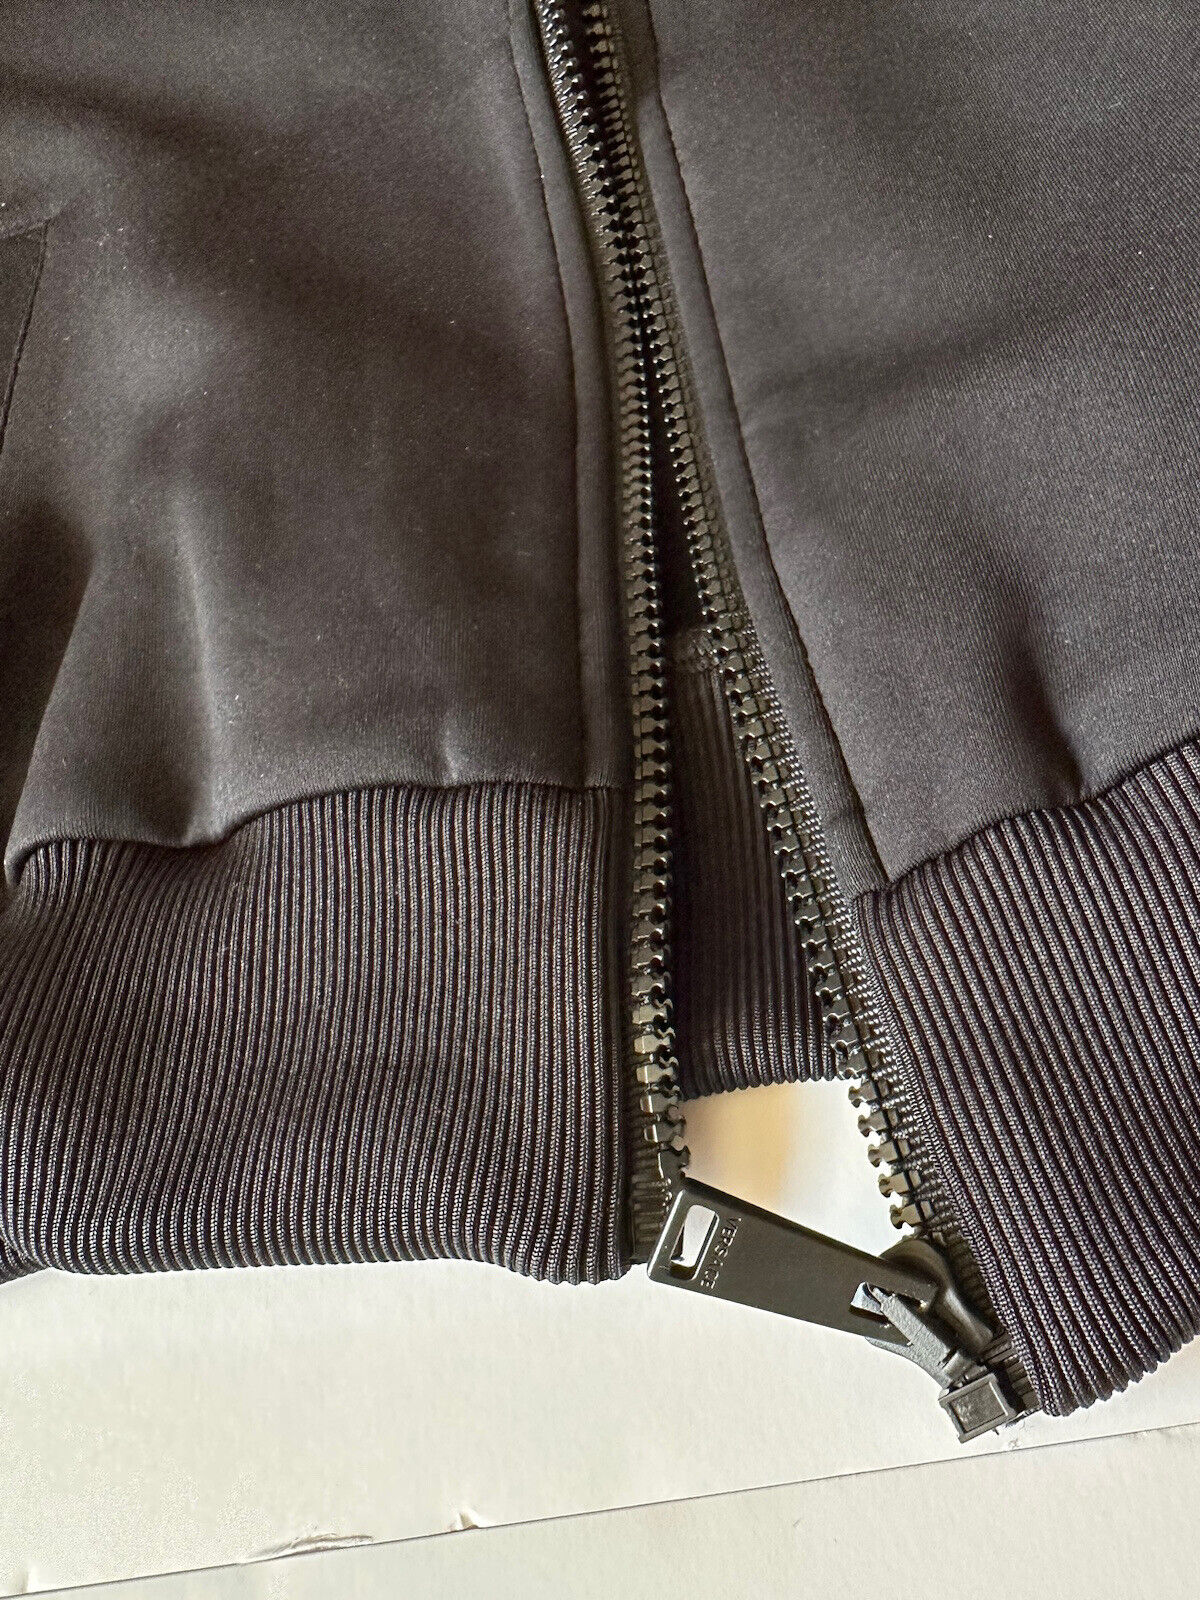 NWT $925 Женская куртка-джоггер с принтом Versace Greca, черная, размер 1 1002080 Италия 